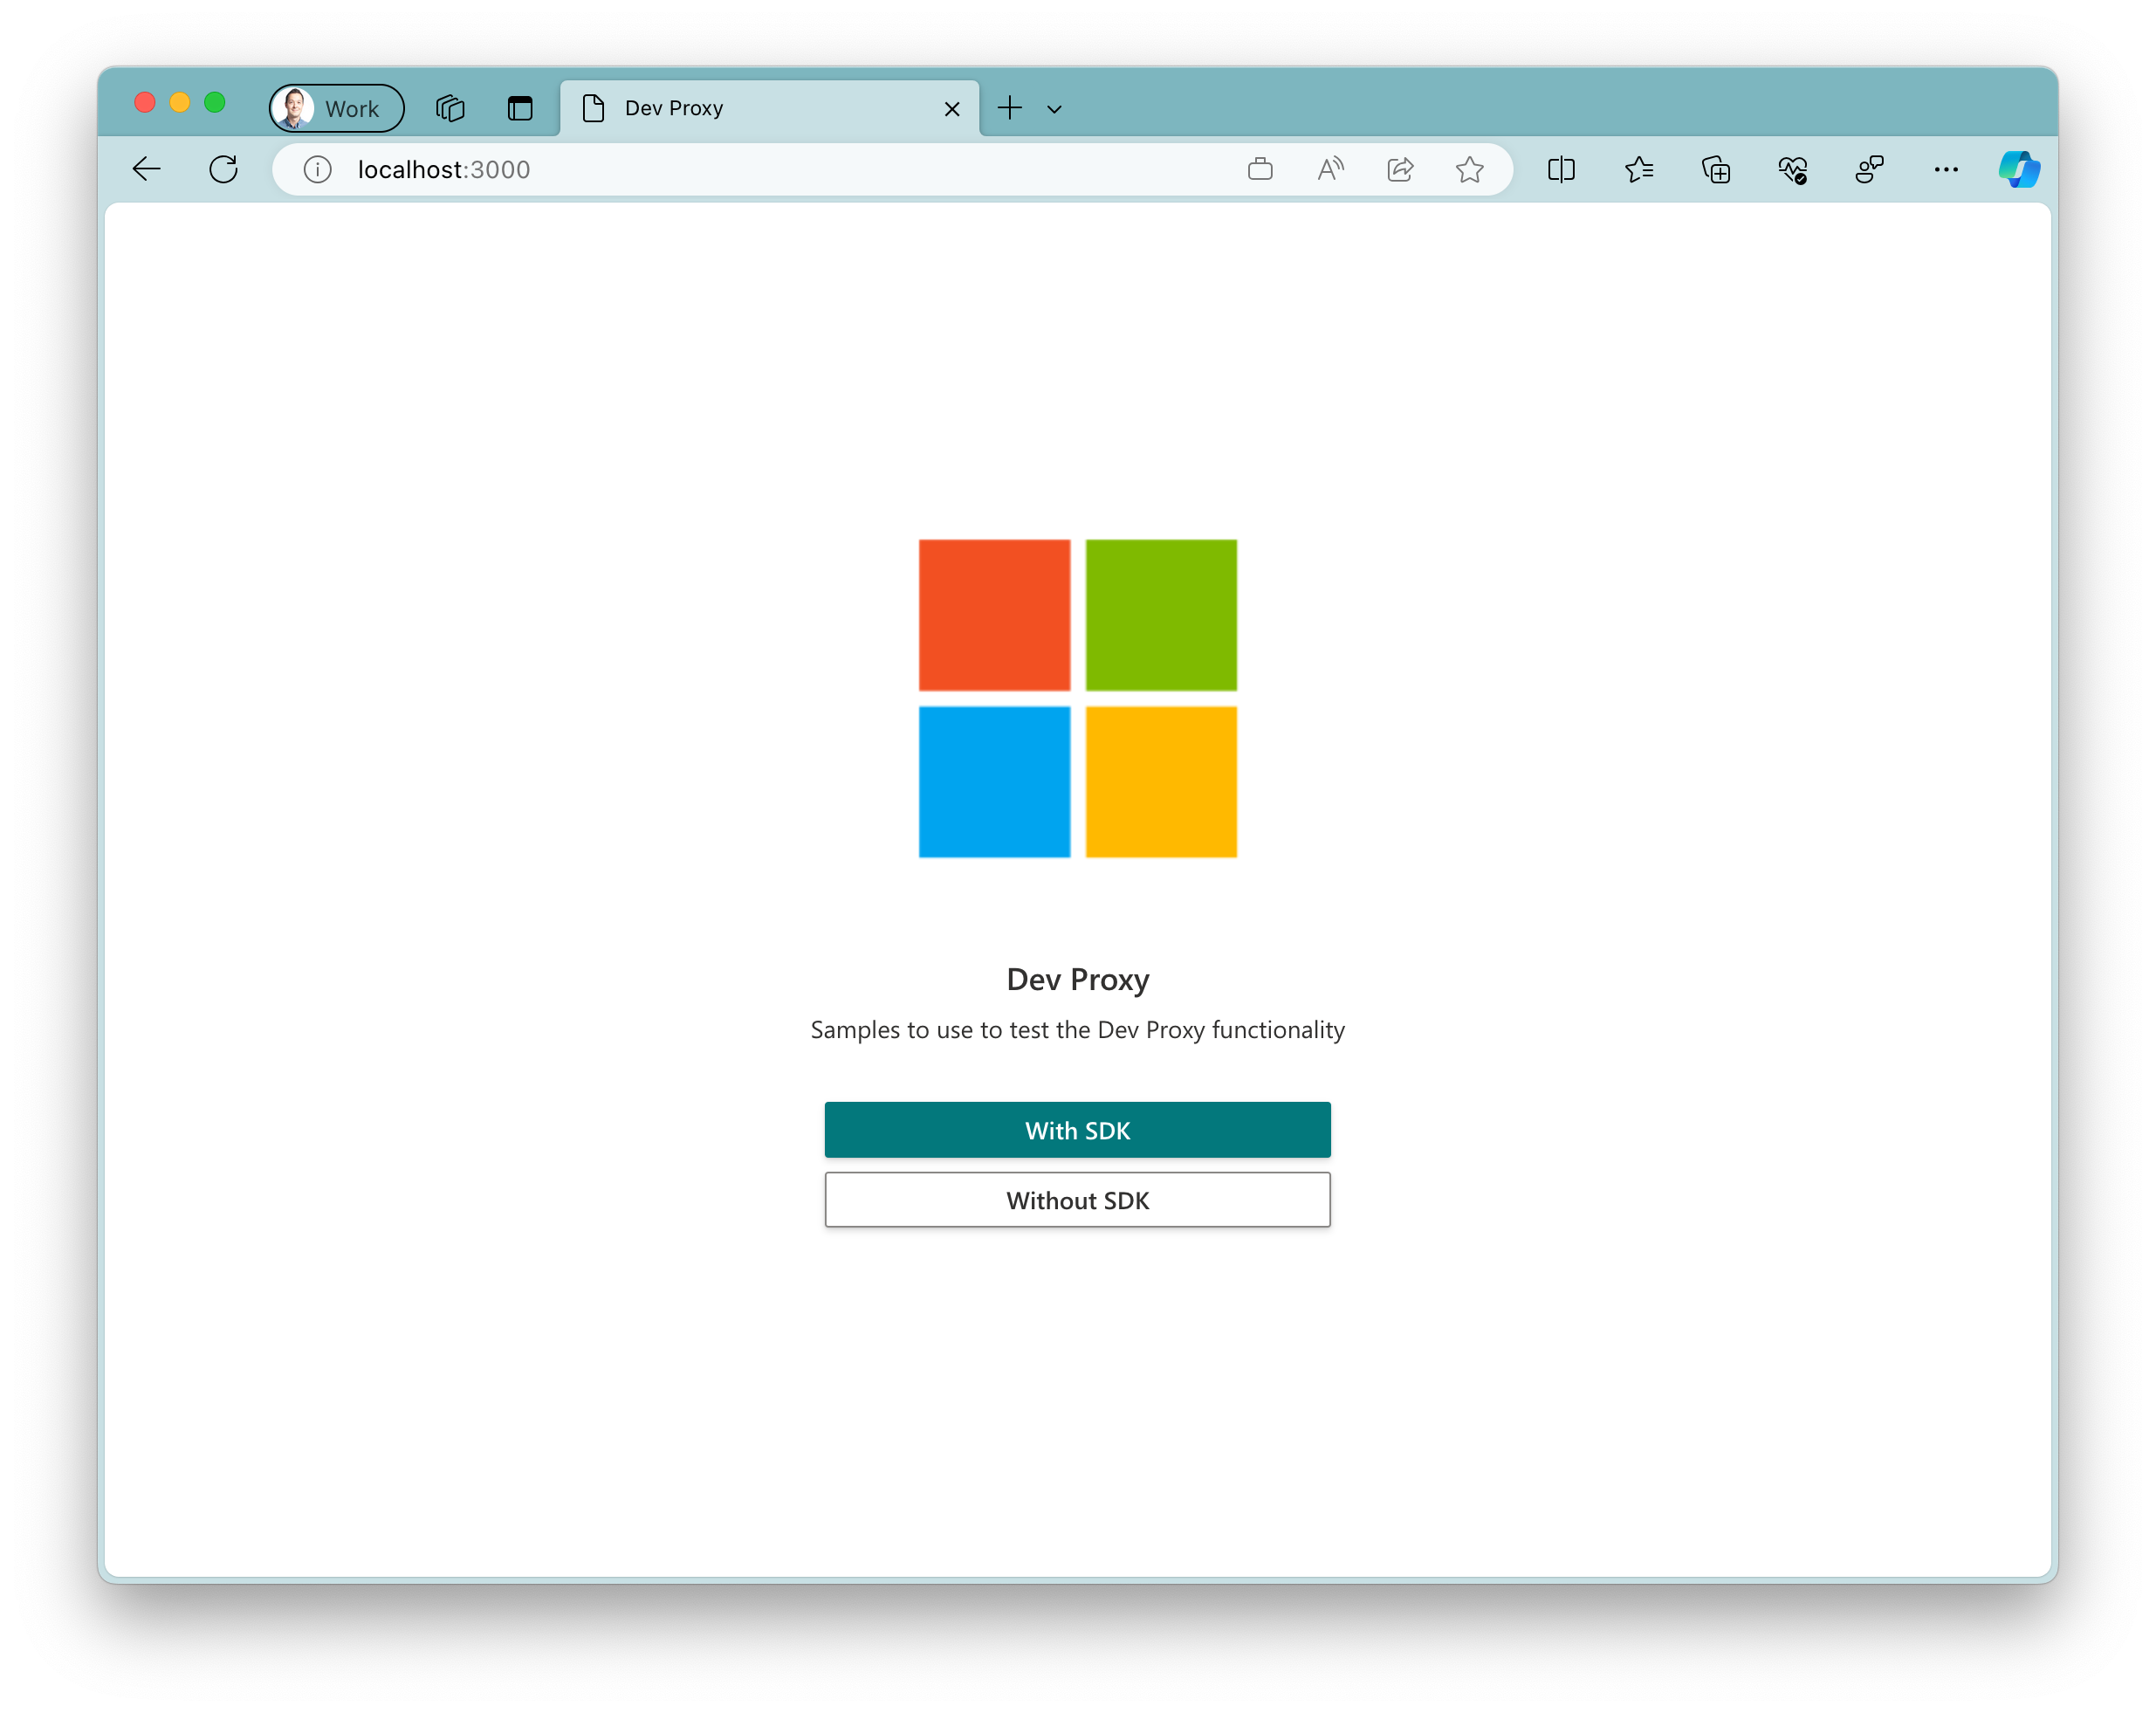 Снимок экрана: пример приложения, запущенного в браузере Microsoft Edge в macOS. Приложение отображает большой логотип Майкрософт с двумя кнопками под ним. Основная кнопка с текстом 